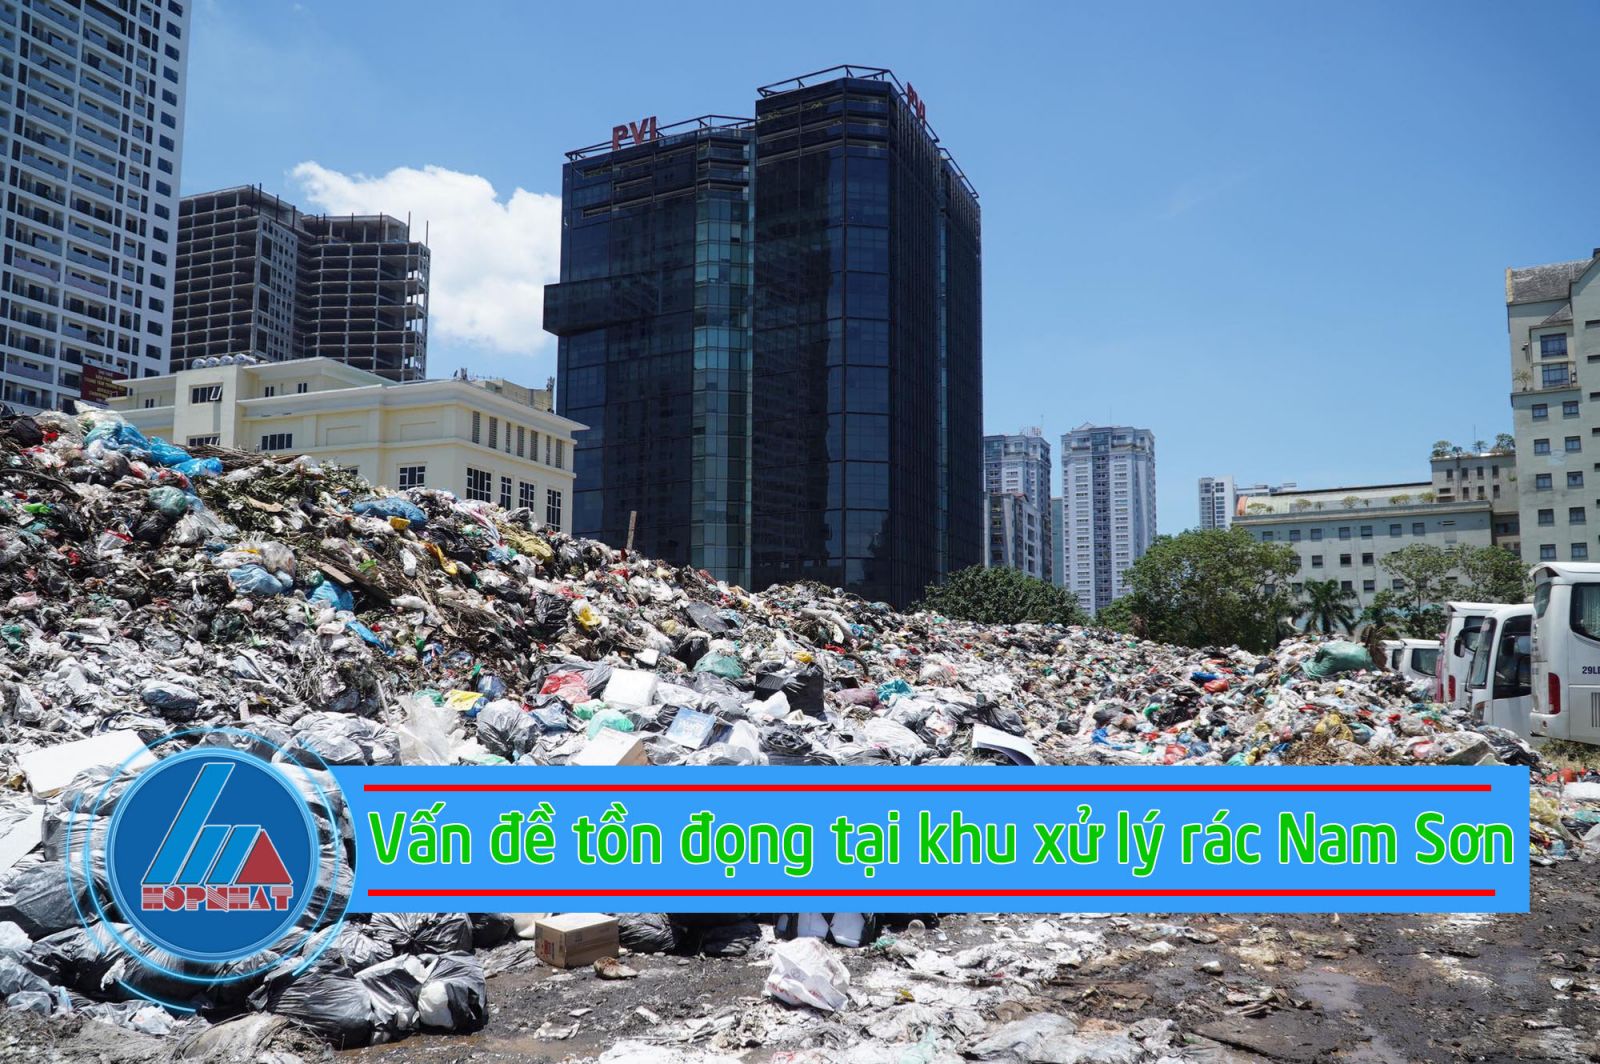 Vấn đề tồn đọng tại khu xử lý rác Nam Sơn